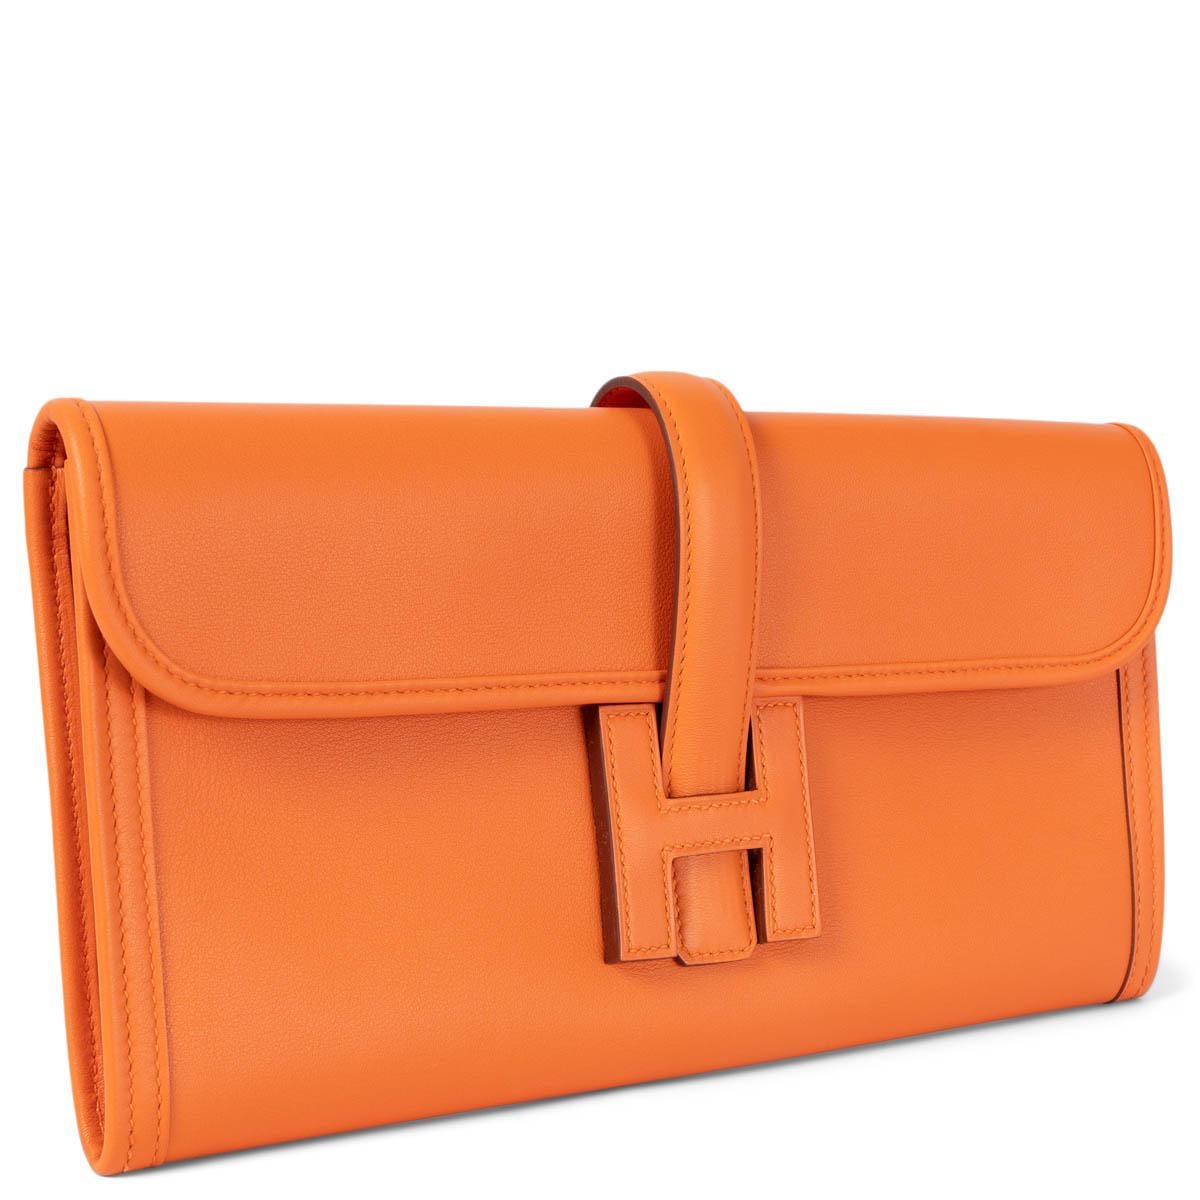 Pochette Hermès Jige Elan 29 100% authentique en cuir Veau Swift orange. Il est muni d'un rabat et d'une lanière qui se glisse sous un 